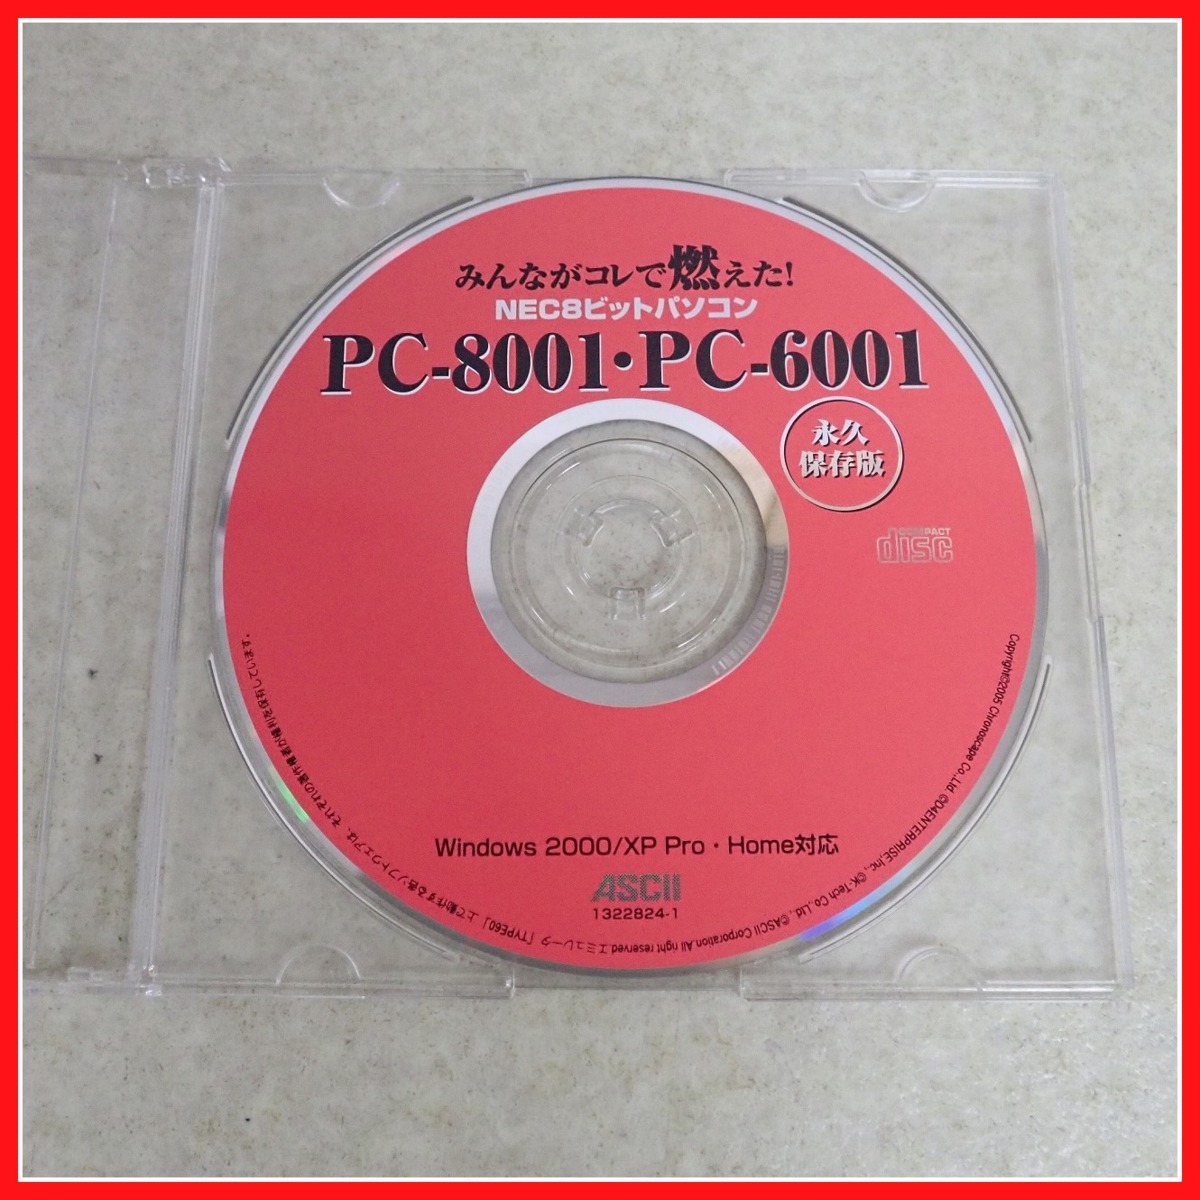 * литература все .kore. гореть .! PC-8001*PC-6001 долгосрочный сохранение версия дополнение CD-ROM есть ASCII ASCII компьютер относящийся [10